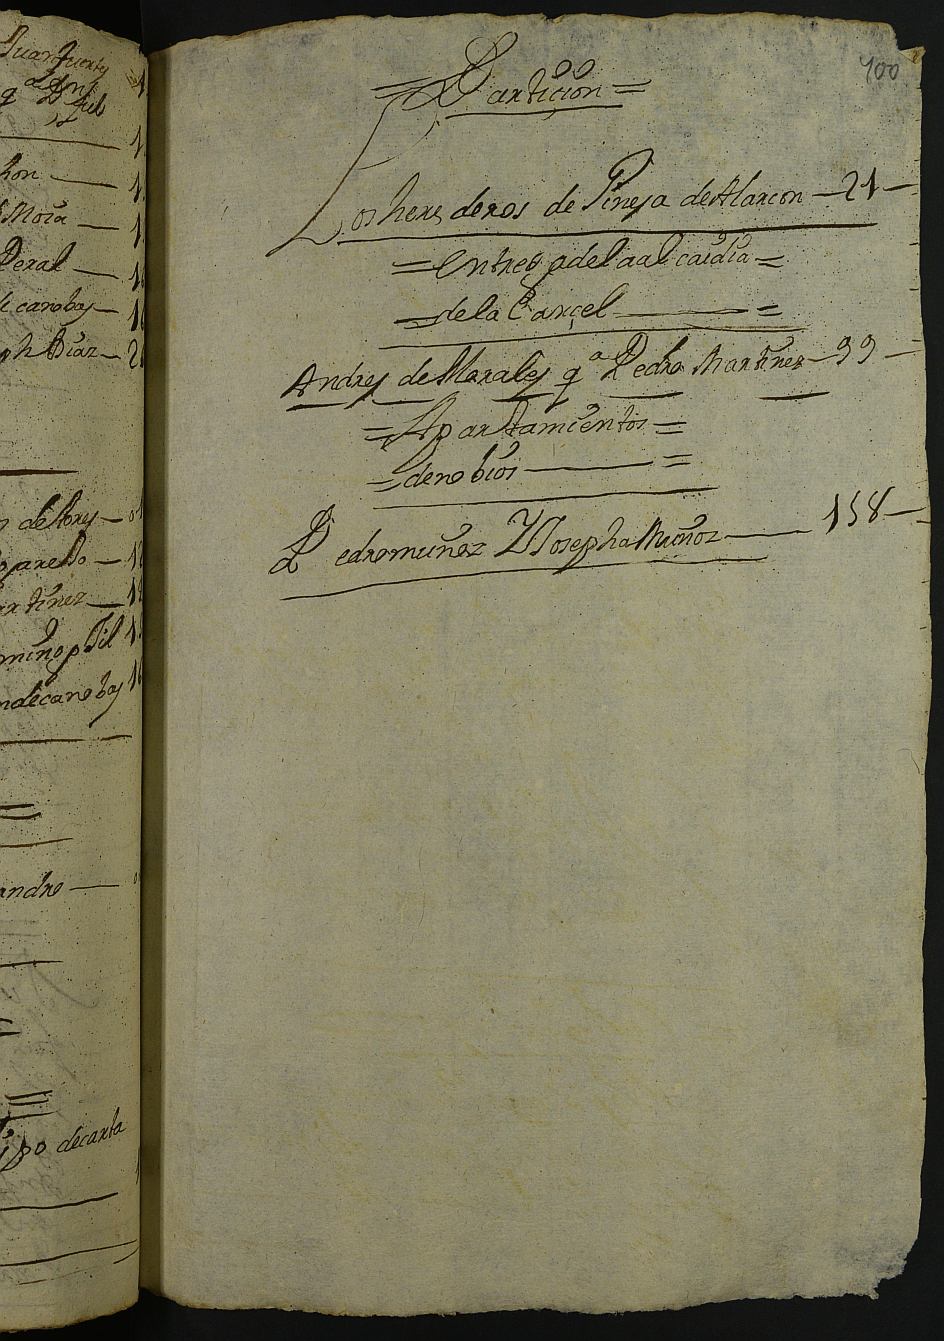 Registro de Pedro Francisco de Velasco, Alhama de Murcia. Años 1703-1705.